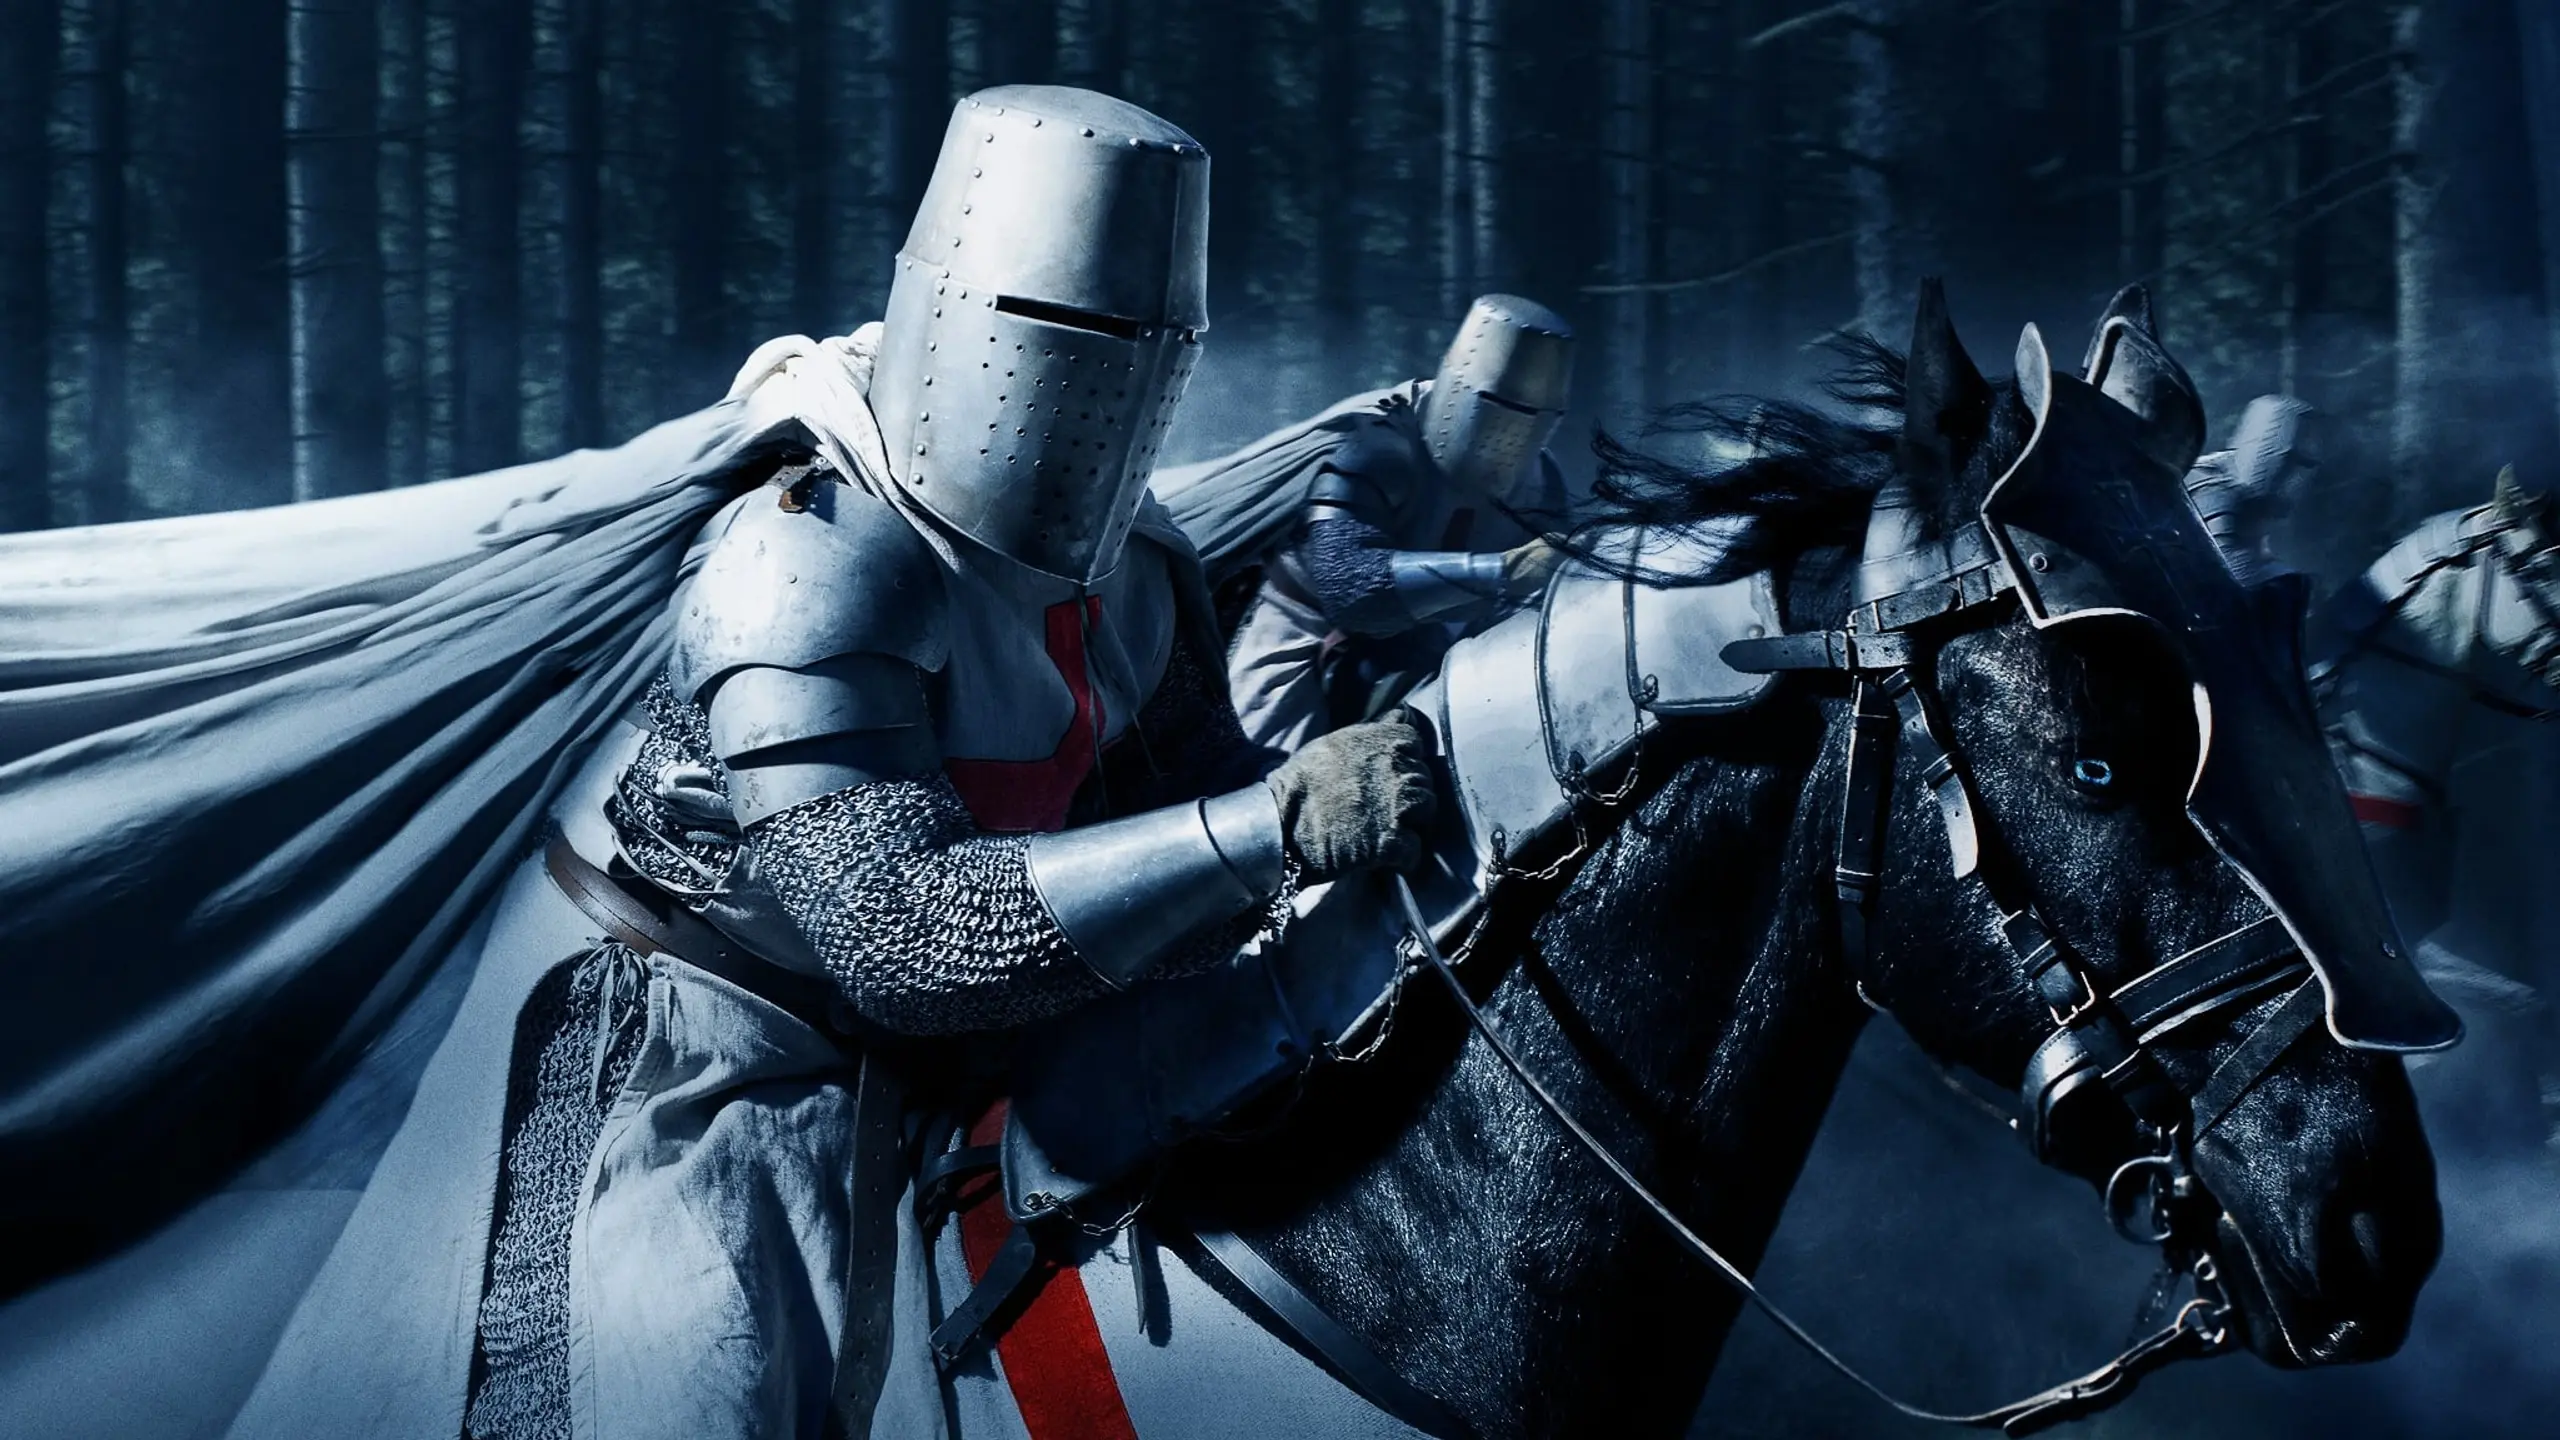 Ritter, Schwerter, Königreiche: Die besten Mittelalter-SerienBild 2